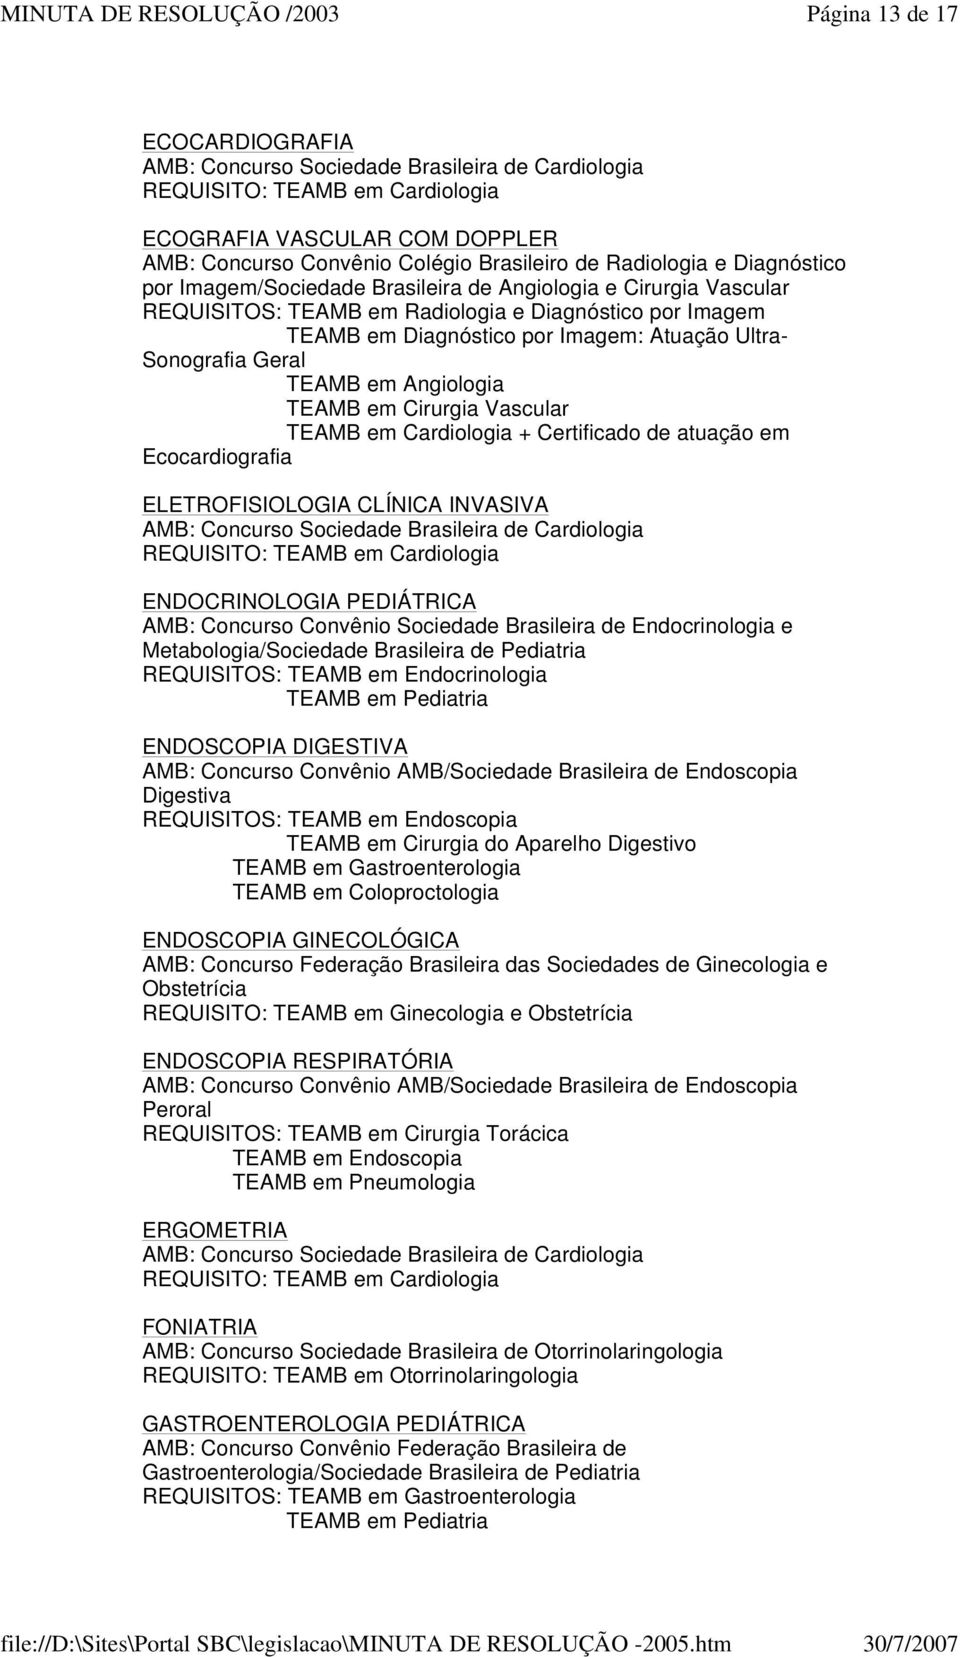 Sonografia Geral TEAMB em Angiologia TEAMB em Cirurgia Vascular TEAMB em Cardiologia + Certificado de atuação em Ecocardiografia ELETROFISIOLOGIA CLÍNICA INVASIVA AMB: Concurso Sociedade Brasileira